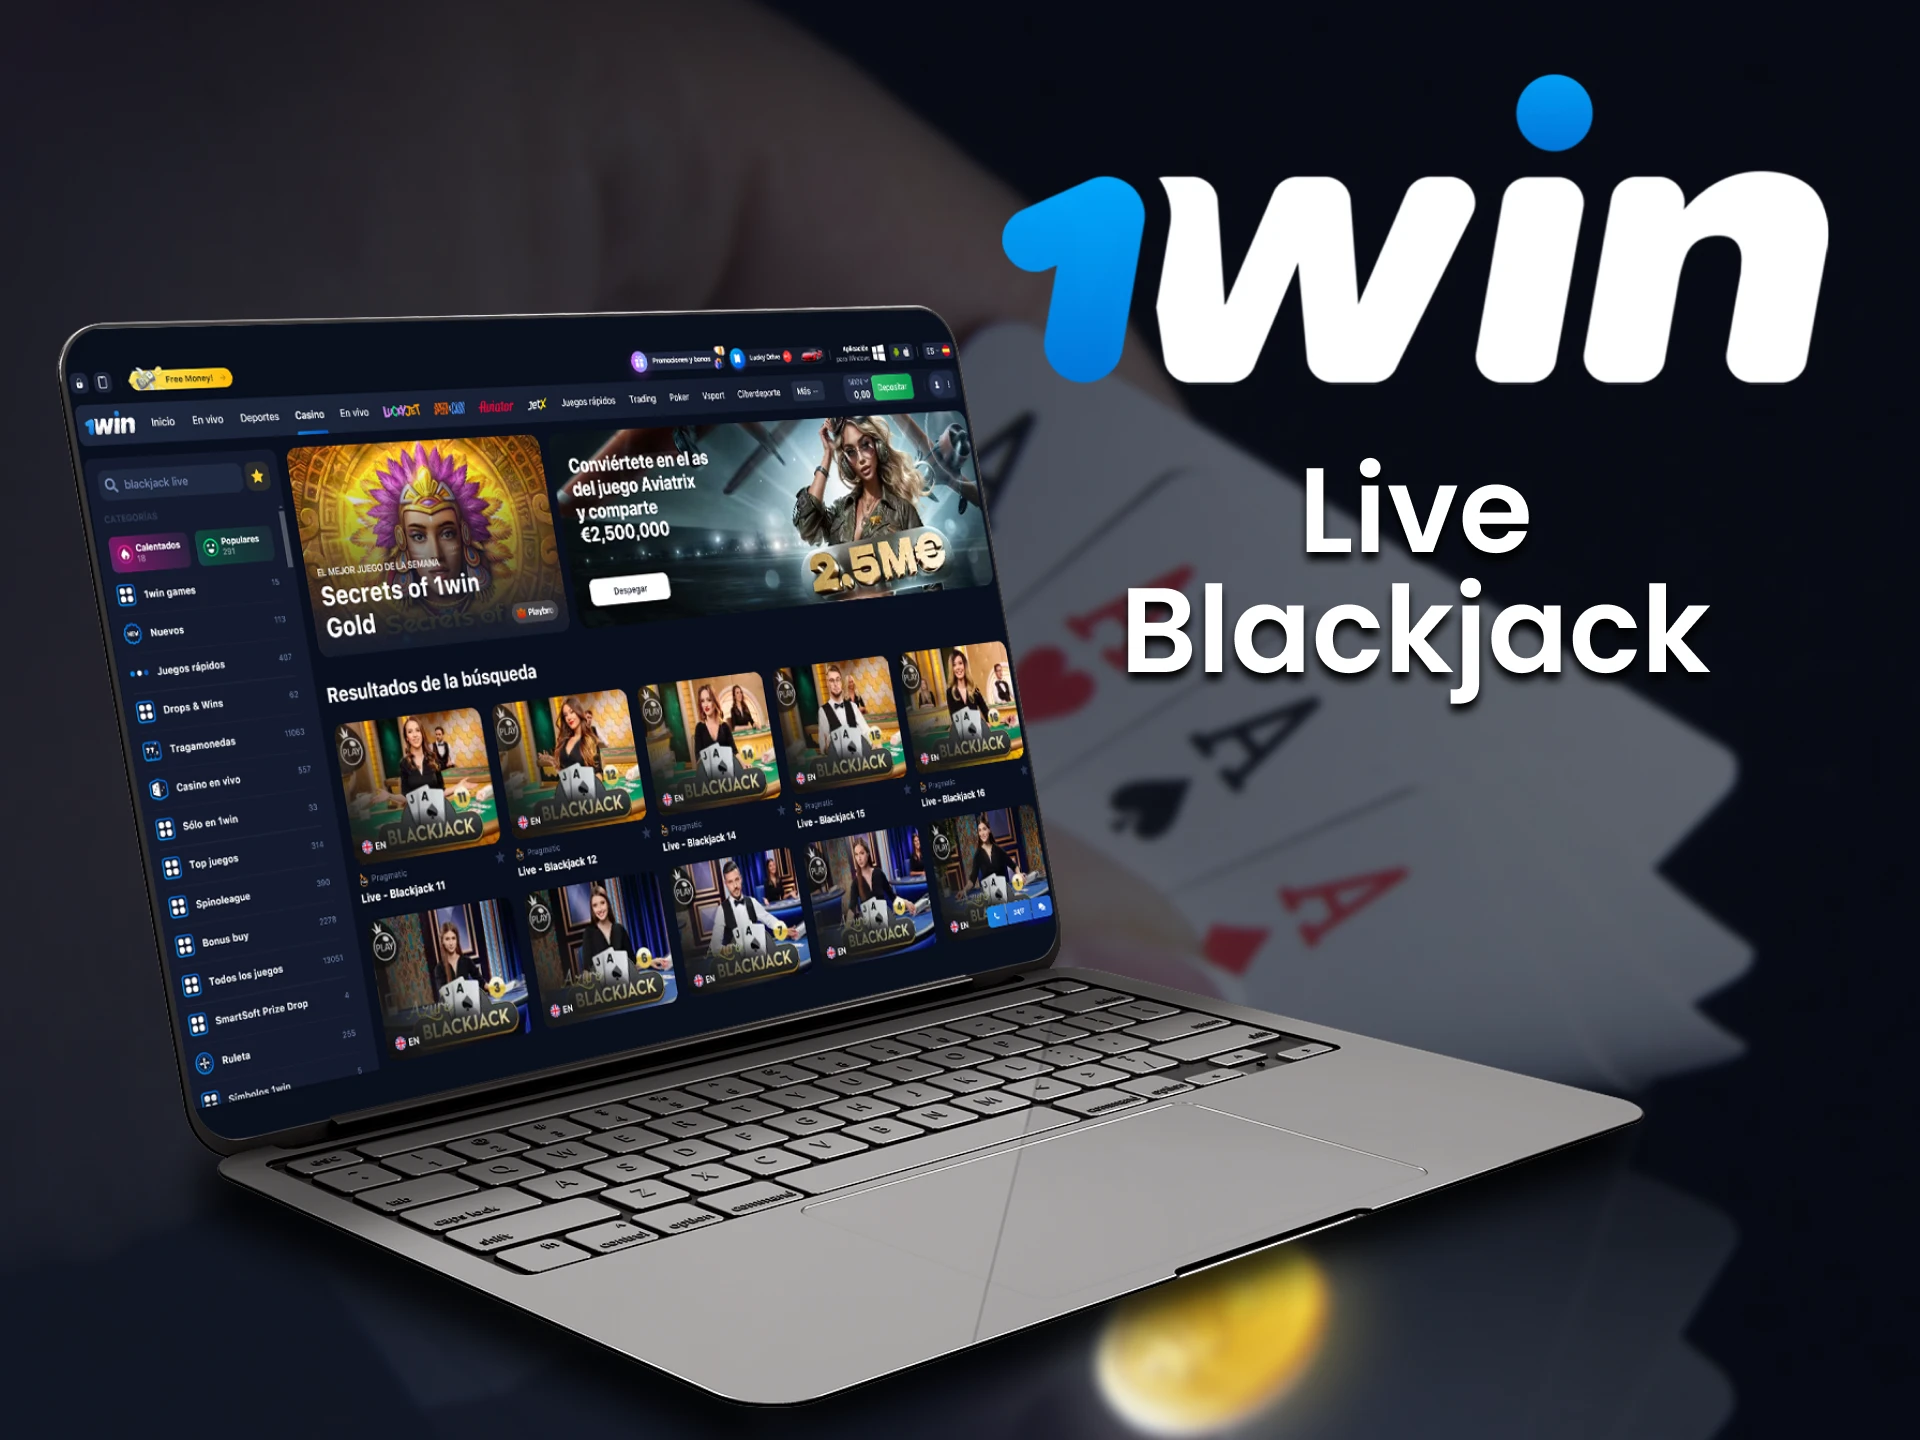 El blackjack en vivo está disponible en la sección de casino de 1win.